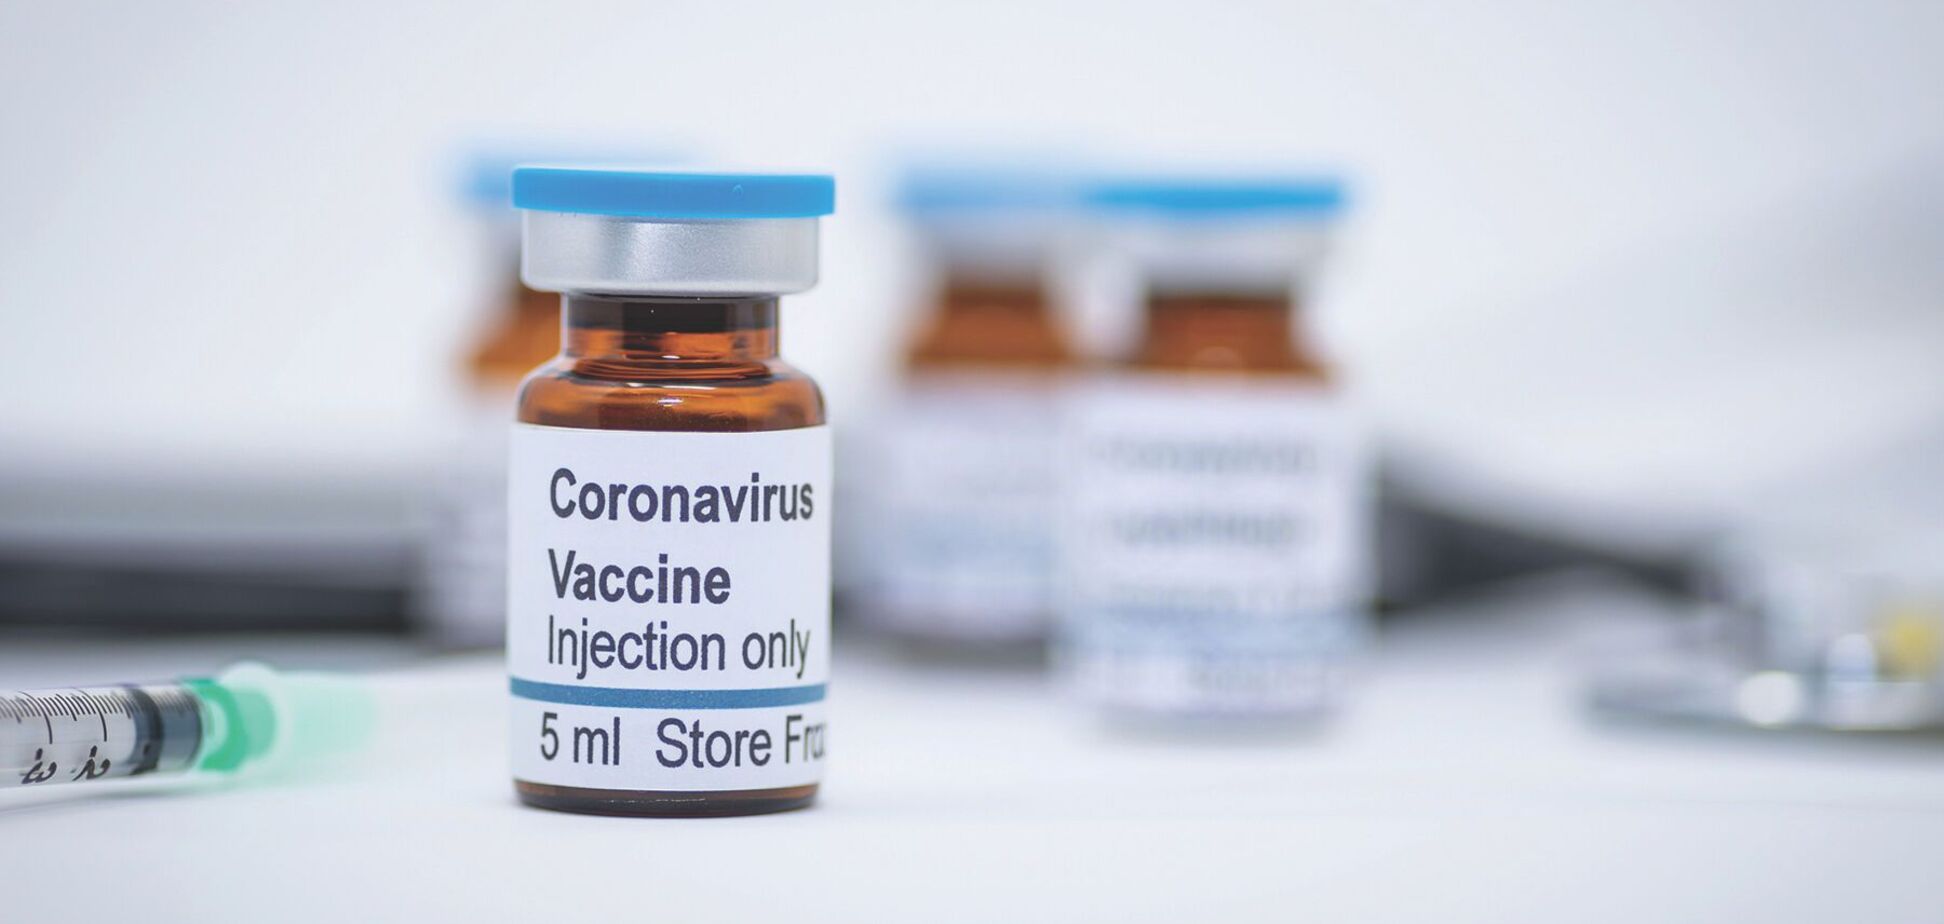 Sanofi та GlaxoSmithKline нададуть 200 млн доз вакцини для боротьби з COVID-19